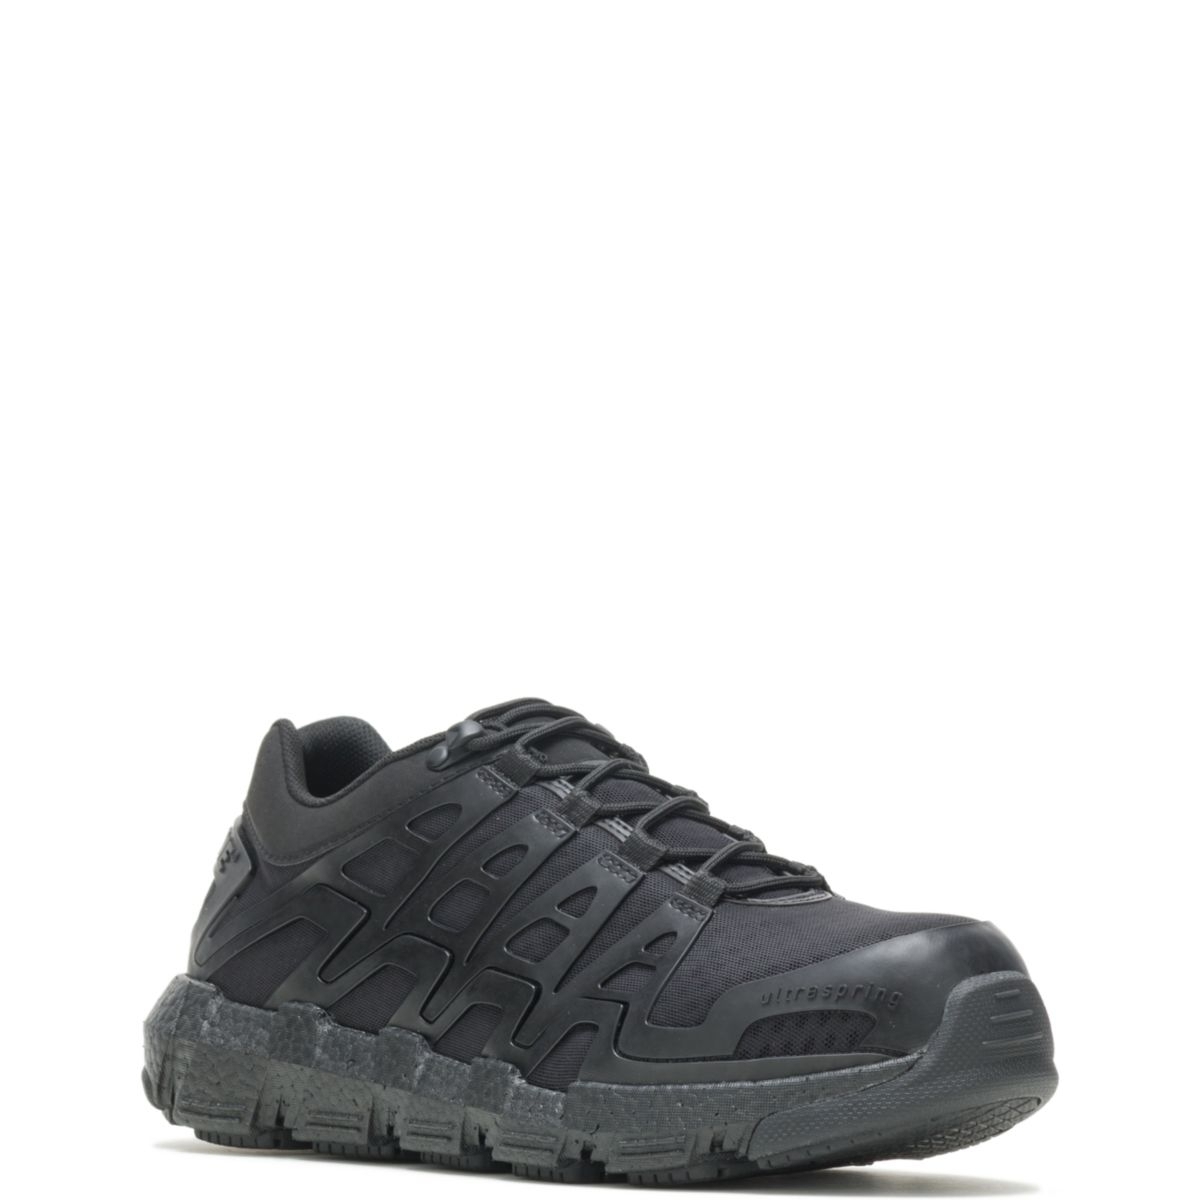 WOLVERINE Men's Rev Vent UltraSpringâ¢ DuraShocksÂ® CarbonMAXÂ® Composite Toe Work Shoe Black - W211017 BLACK - BLACK, 11